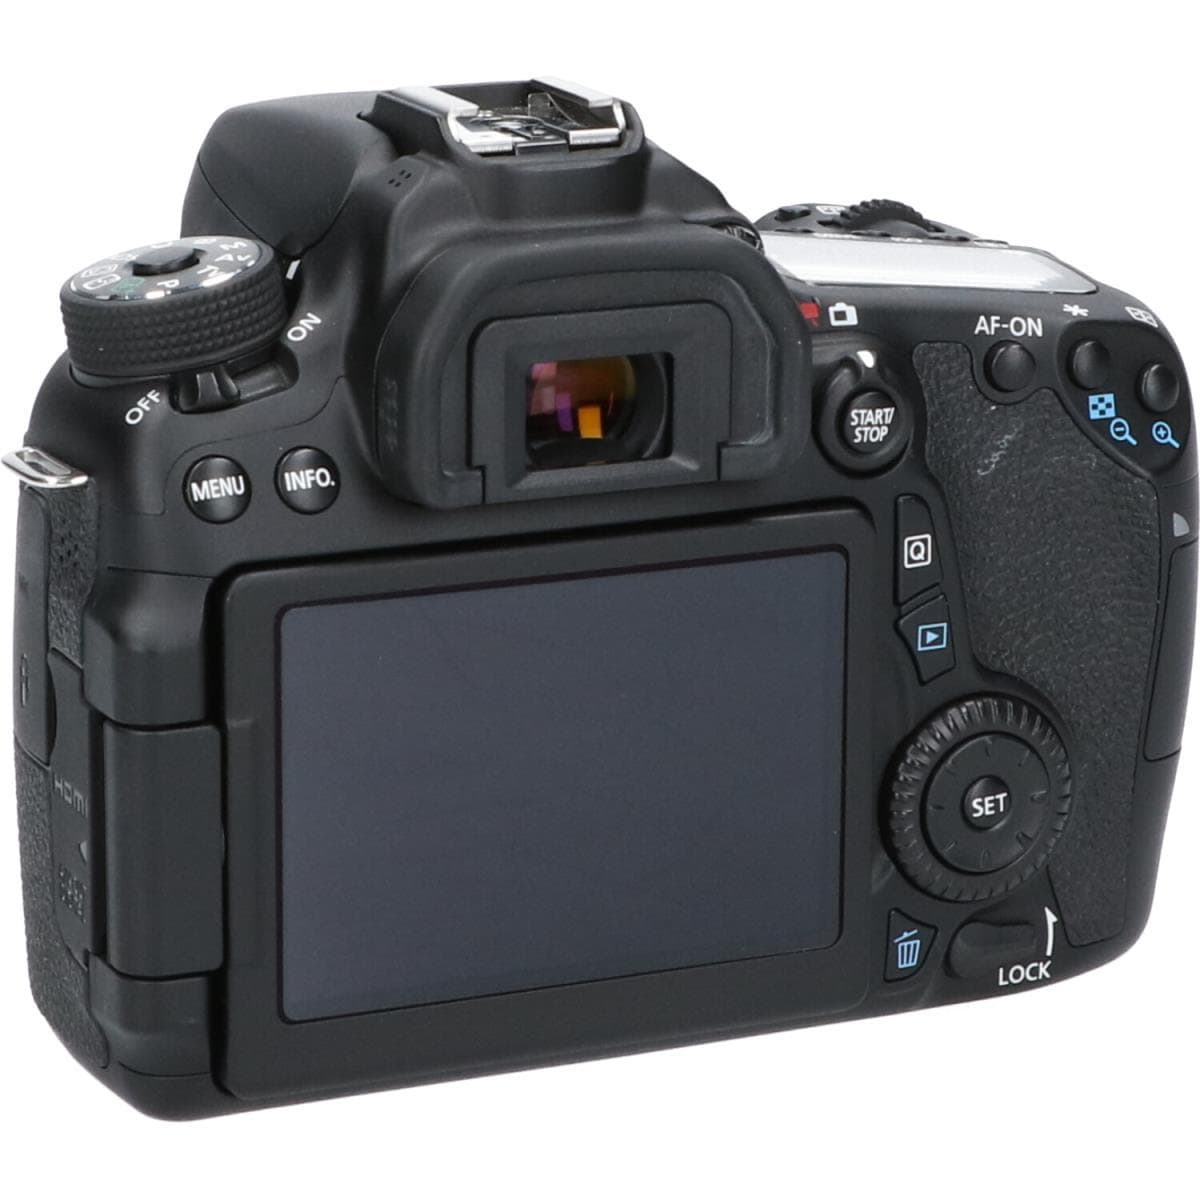 Canon EOS70D